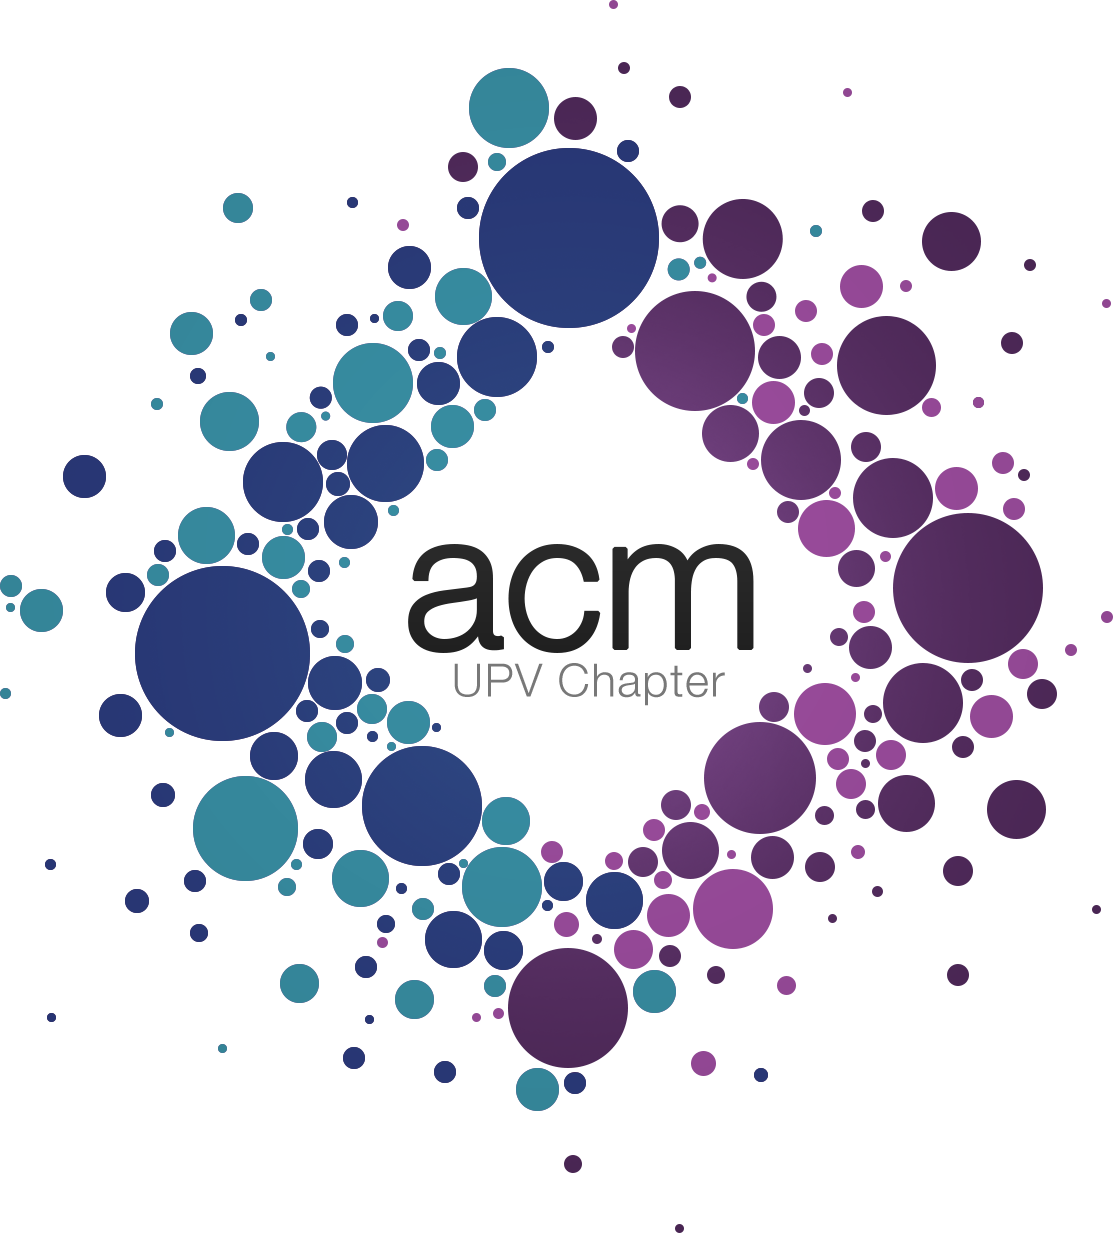 ACM UPV chapter logo